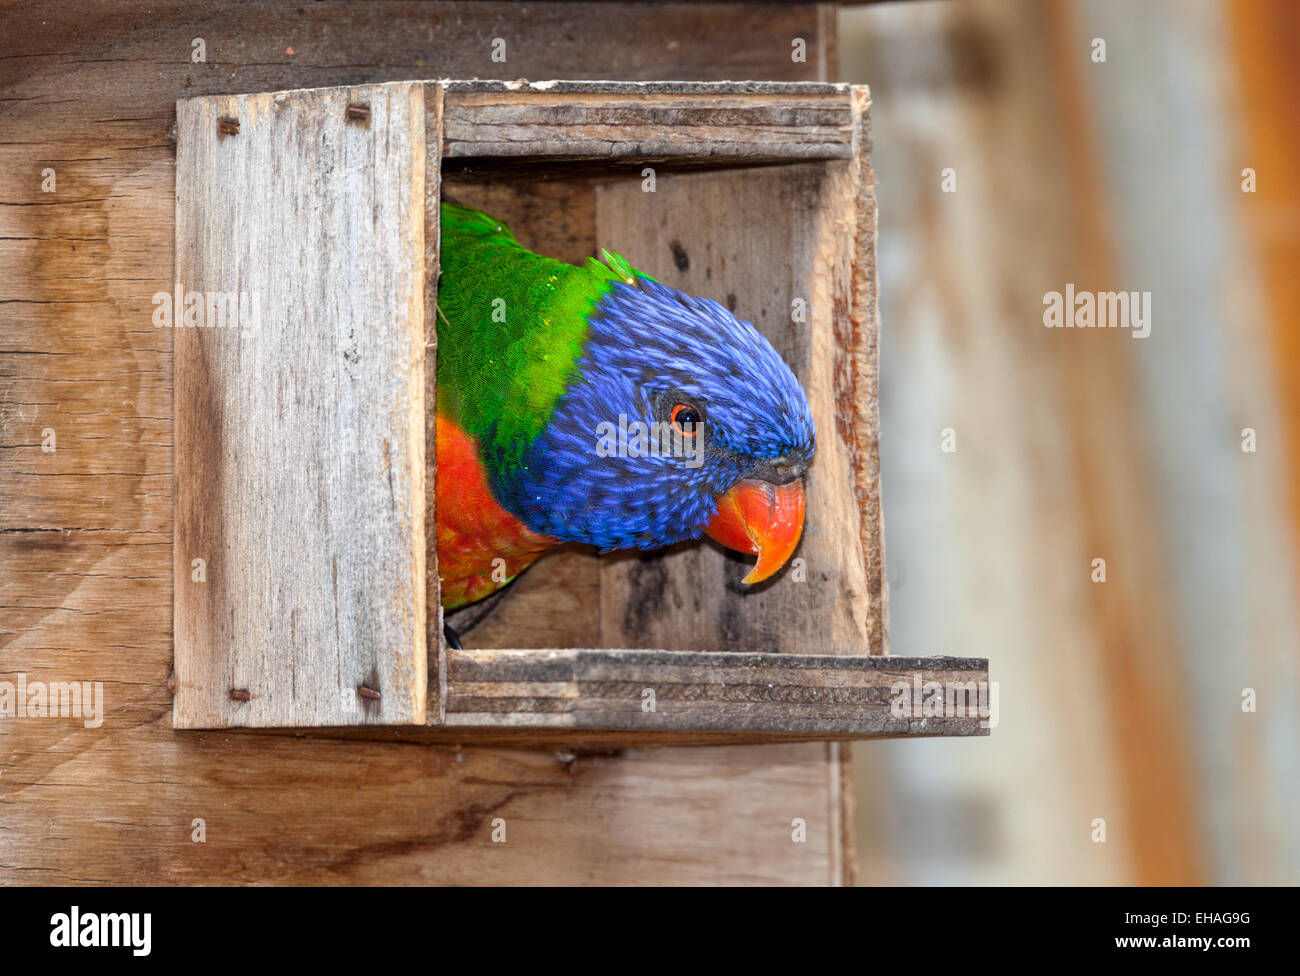 australische Papageien sehr laut und sehr helle Farben die lorikeet Stockfoto